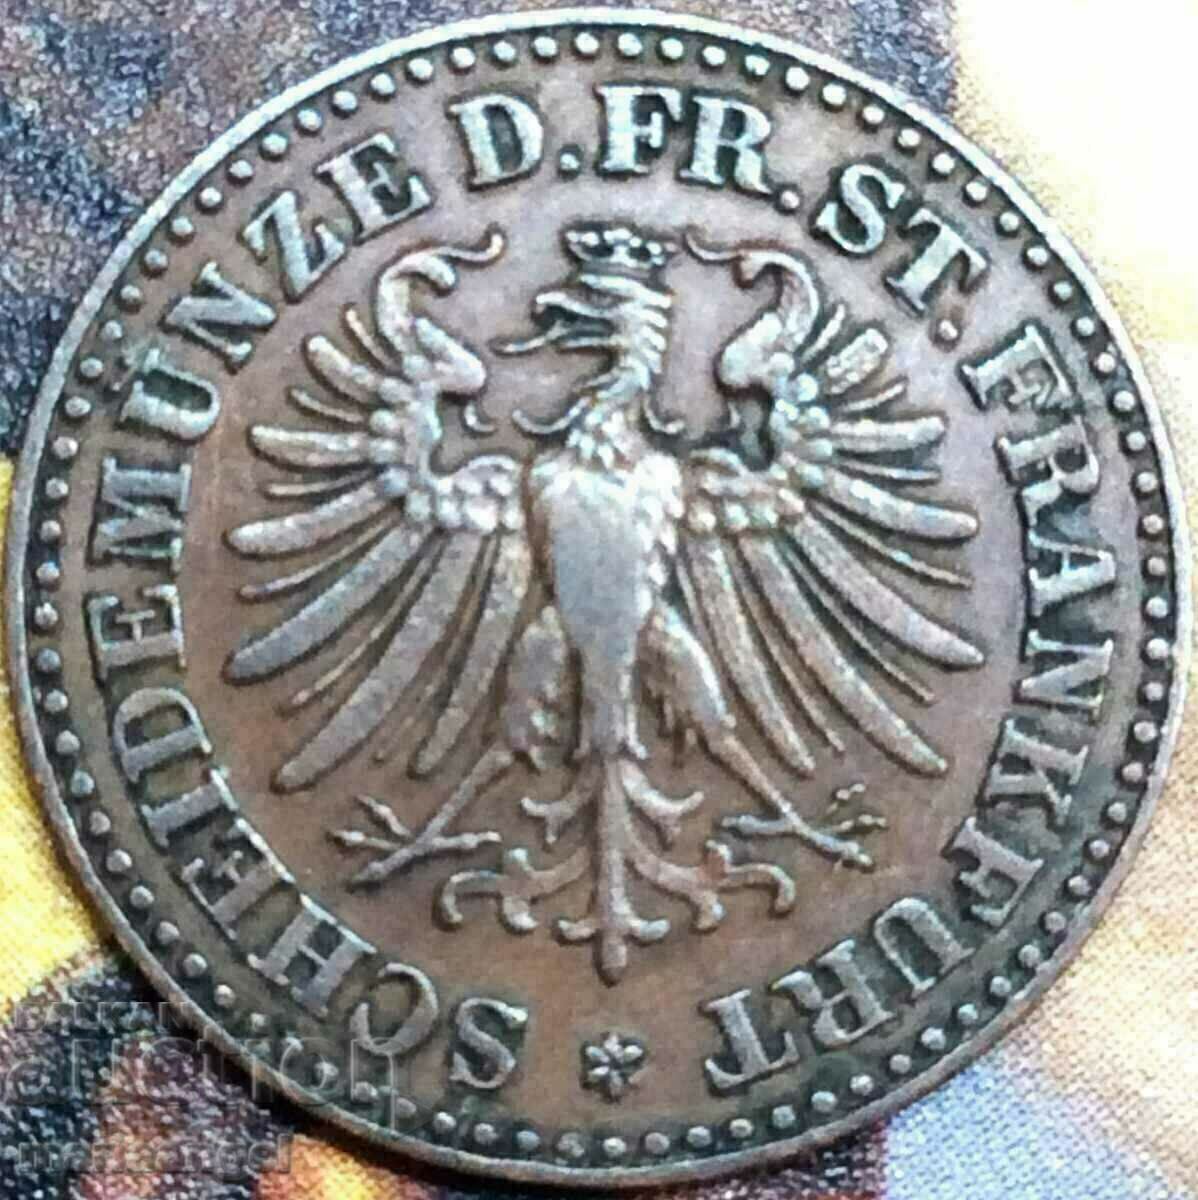 Frankfurt 1865 1 Heller Germany